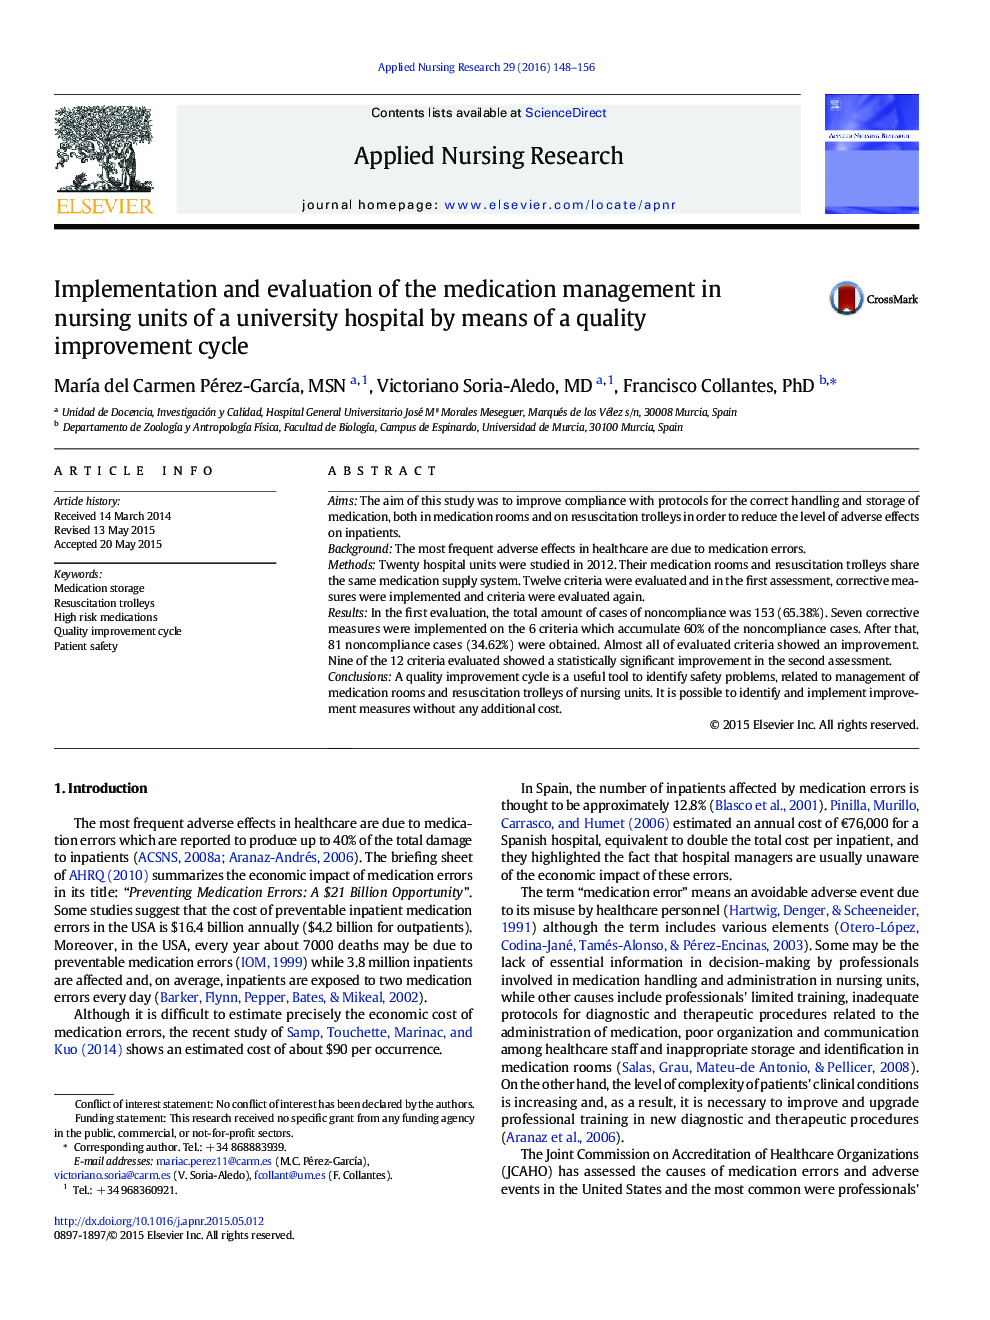 اصل مقاله اجرای و ارزیابی مدیریت دارو در واحدهای پرستاری بیمارستان دانشگاه با استفاده از چرخه بهبود کیفیت 